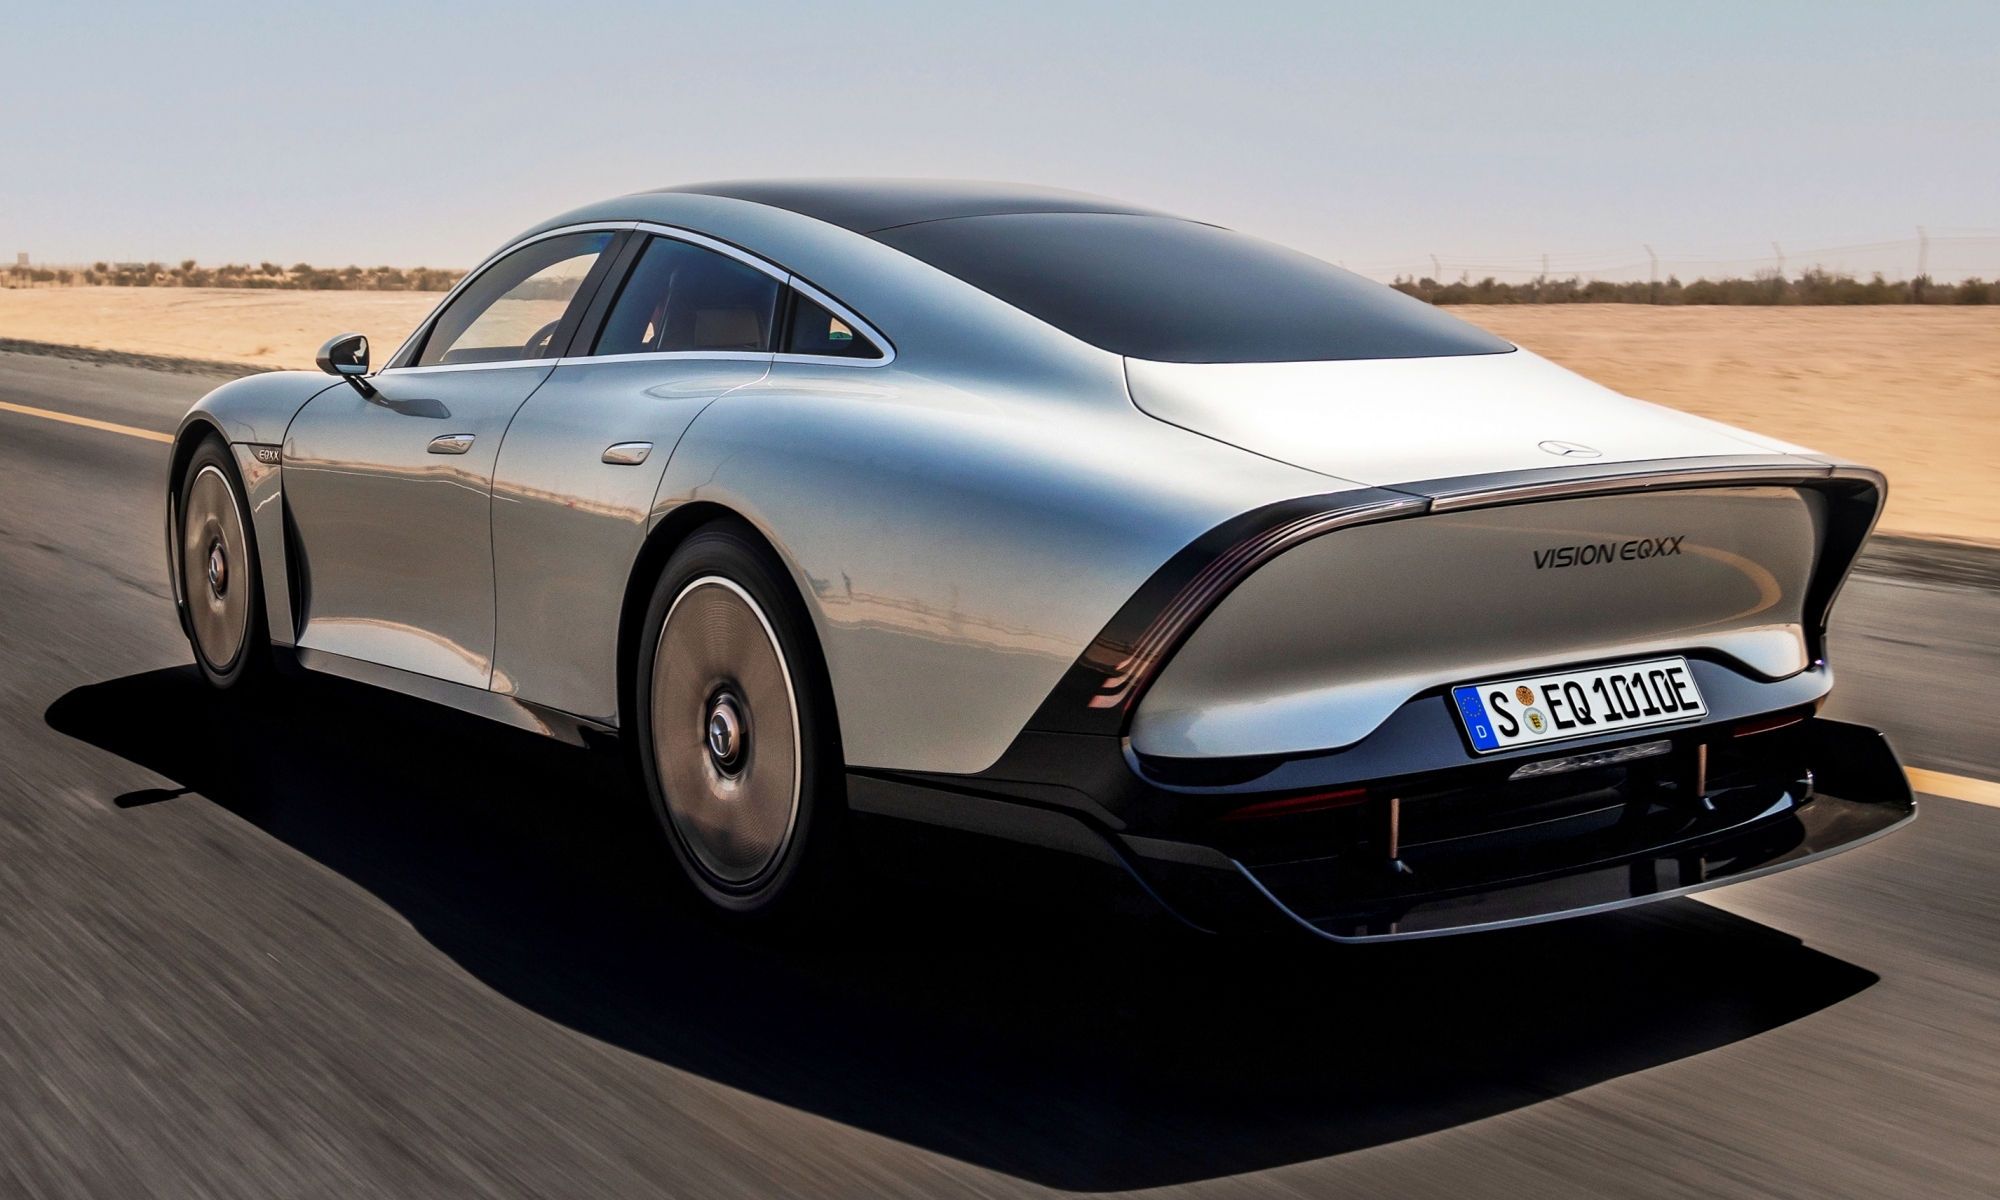 El Vision EQXX anticipa la próxima generación de eléctricos de Mercedes.